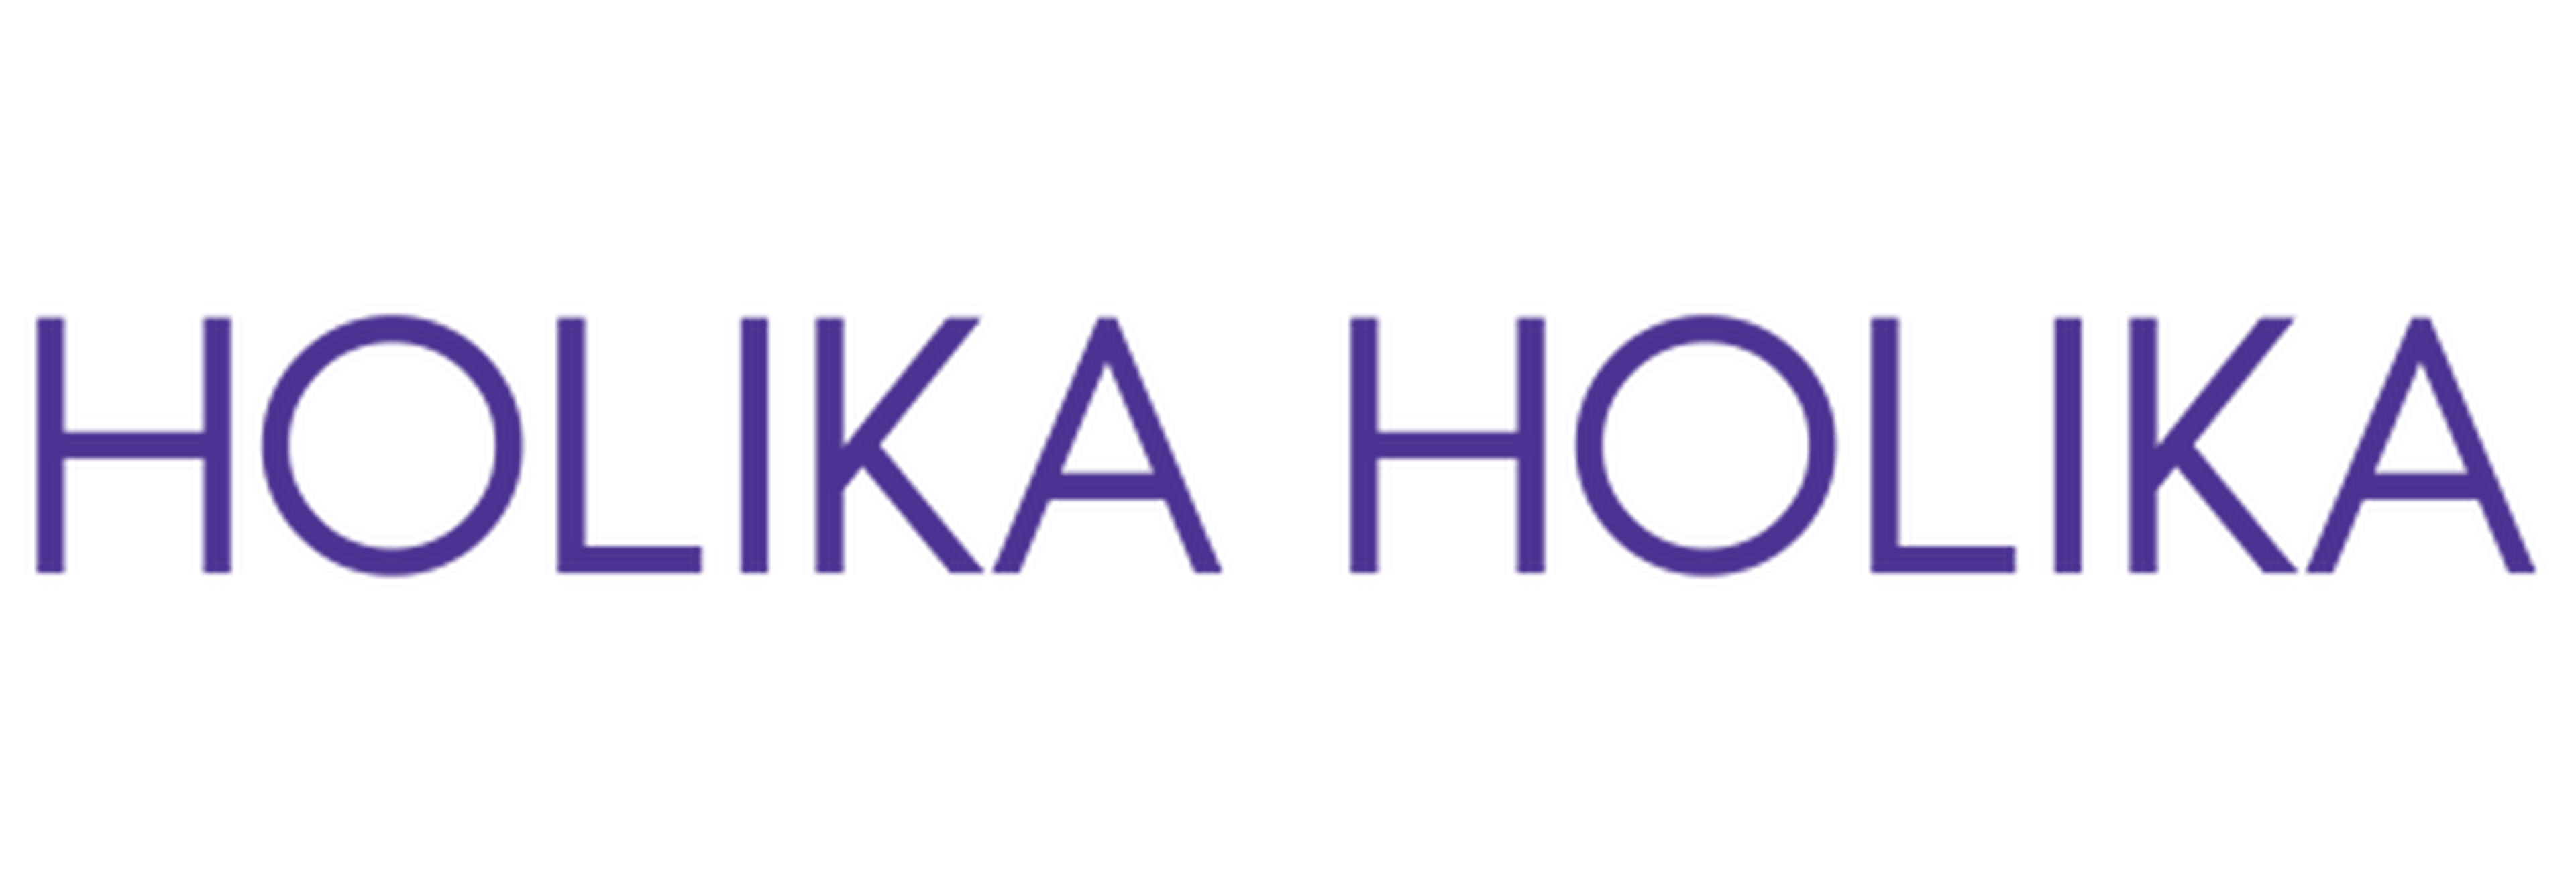 Holika Holika logotype